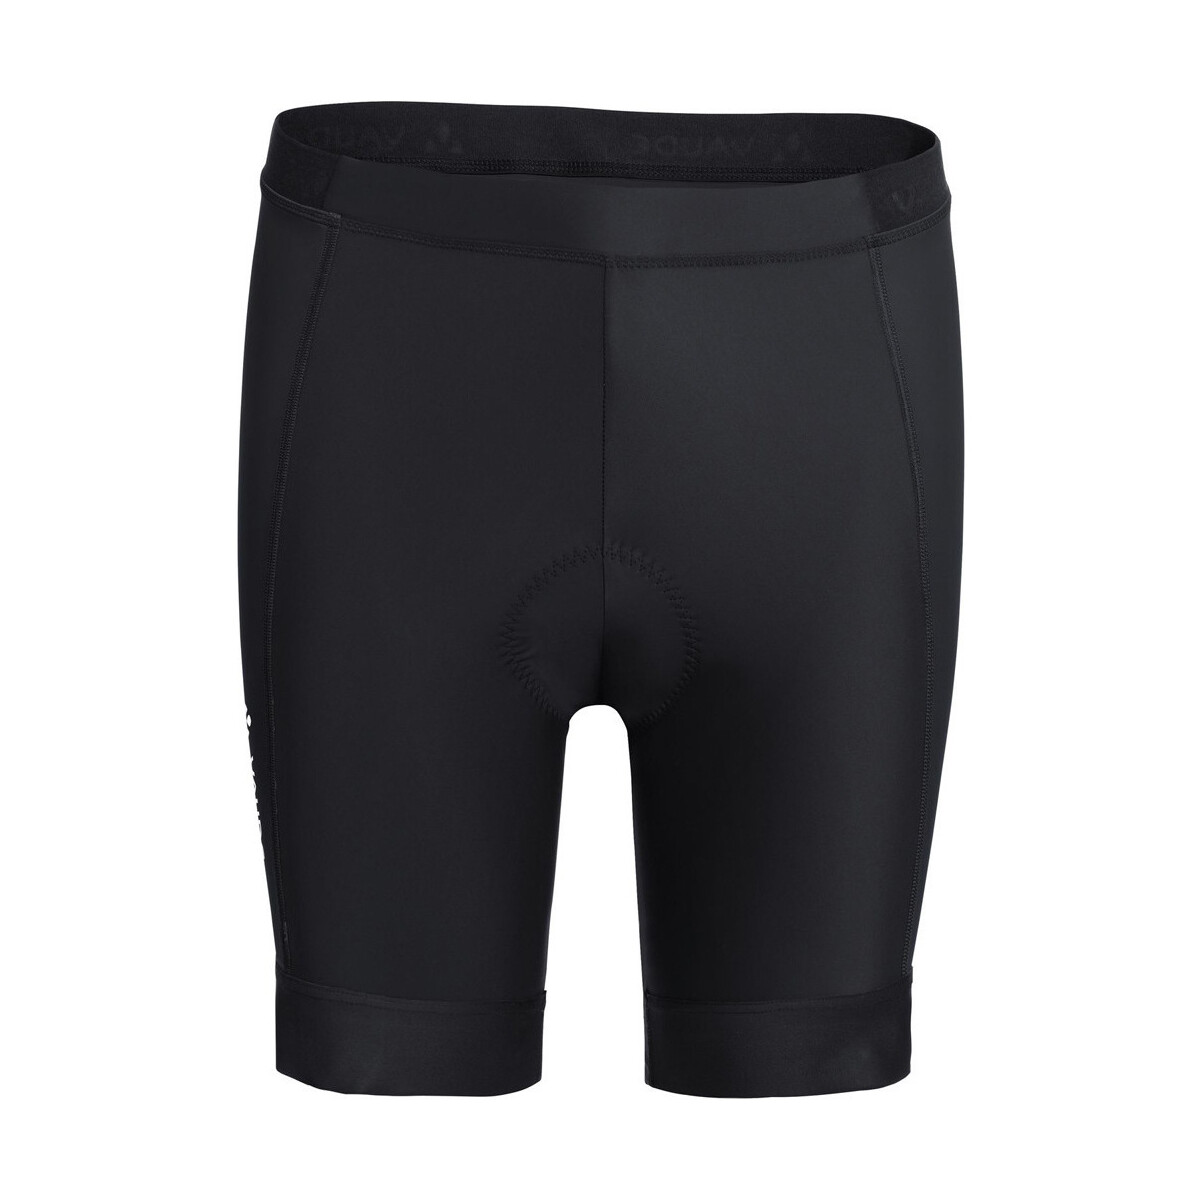 textil Hombre Shorts / Bermudas Vaude Mens Advanced Pants IV Negro